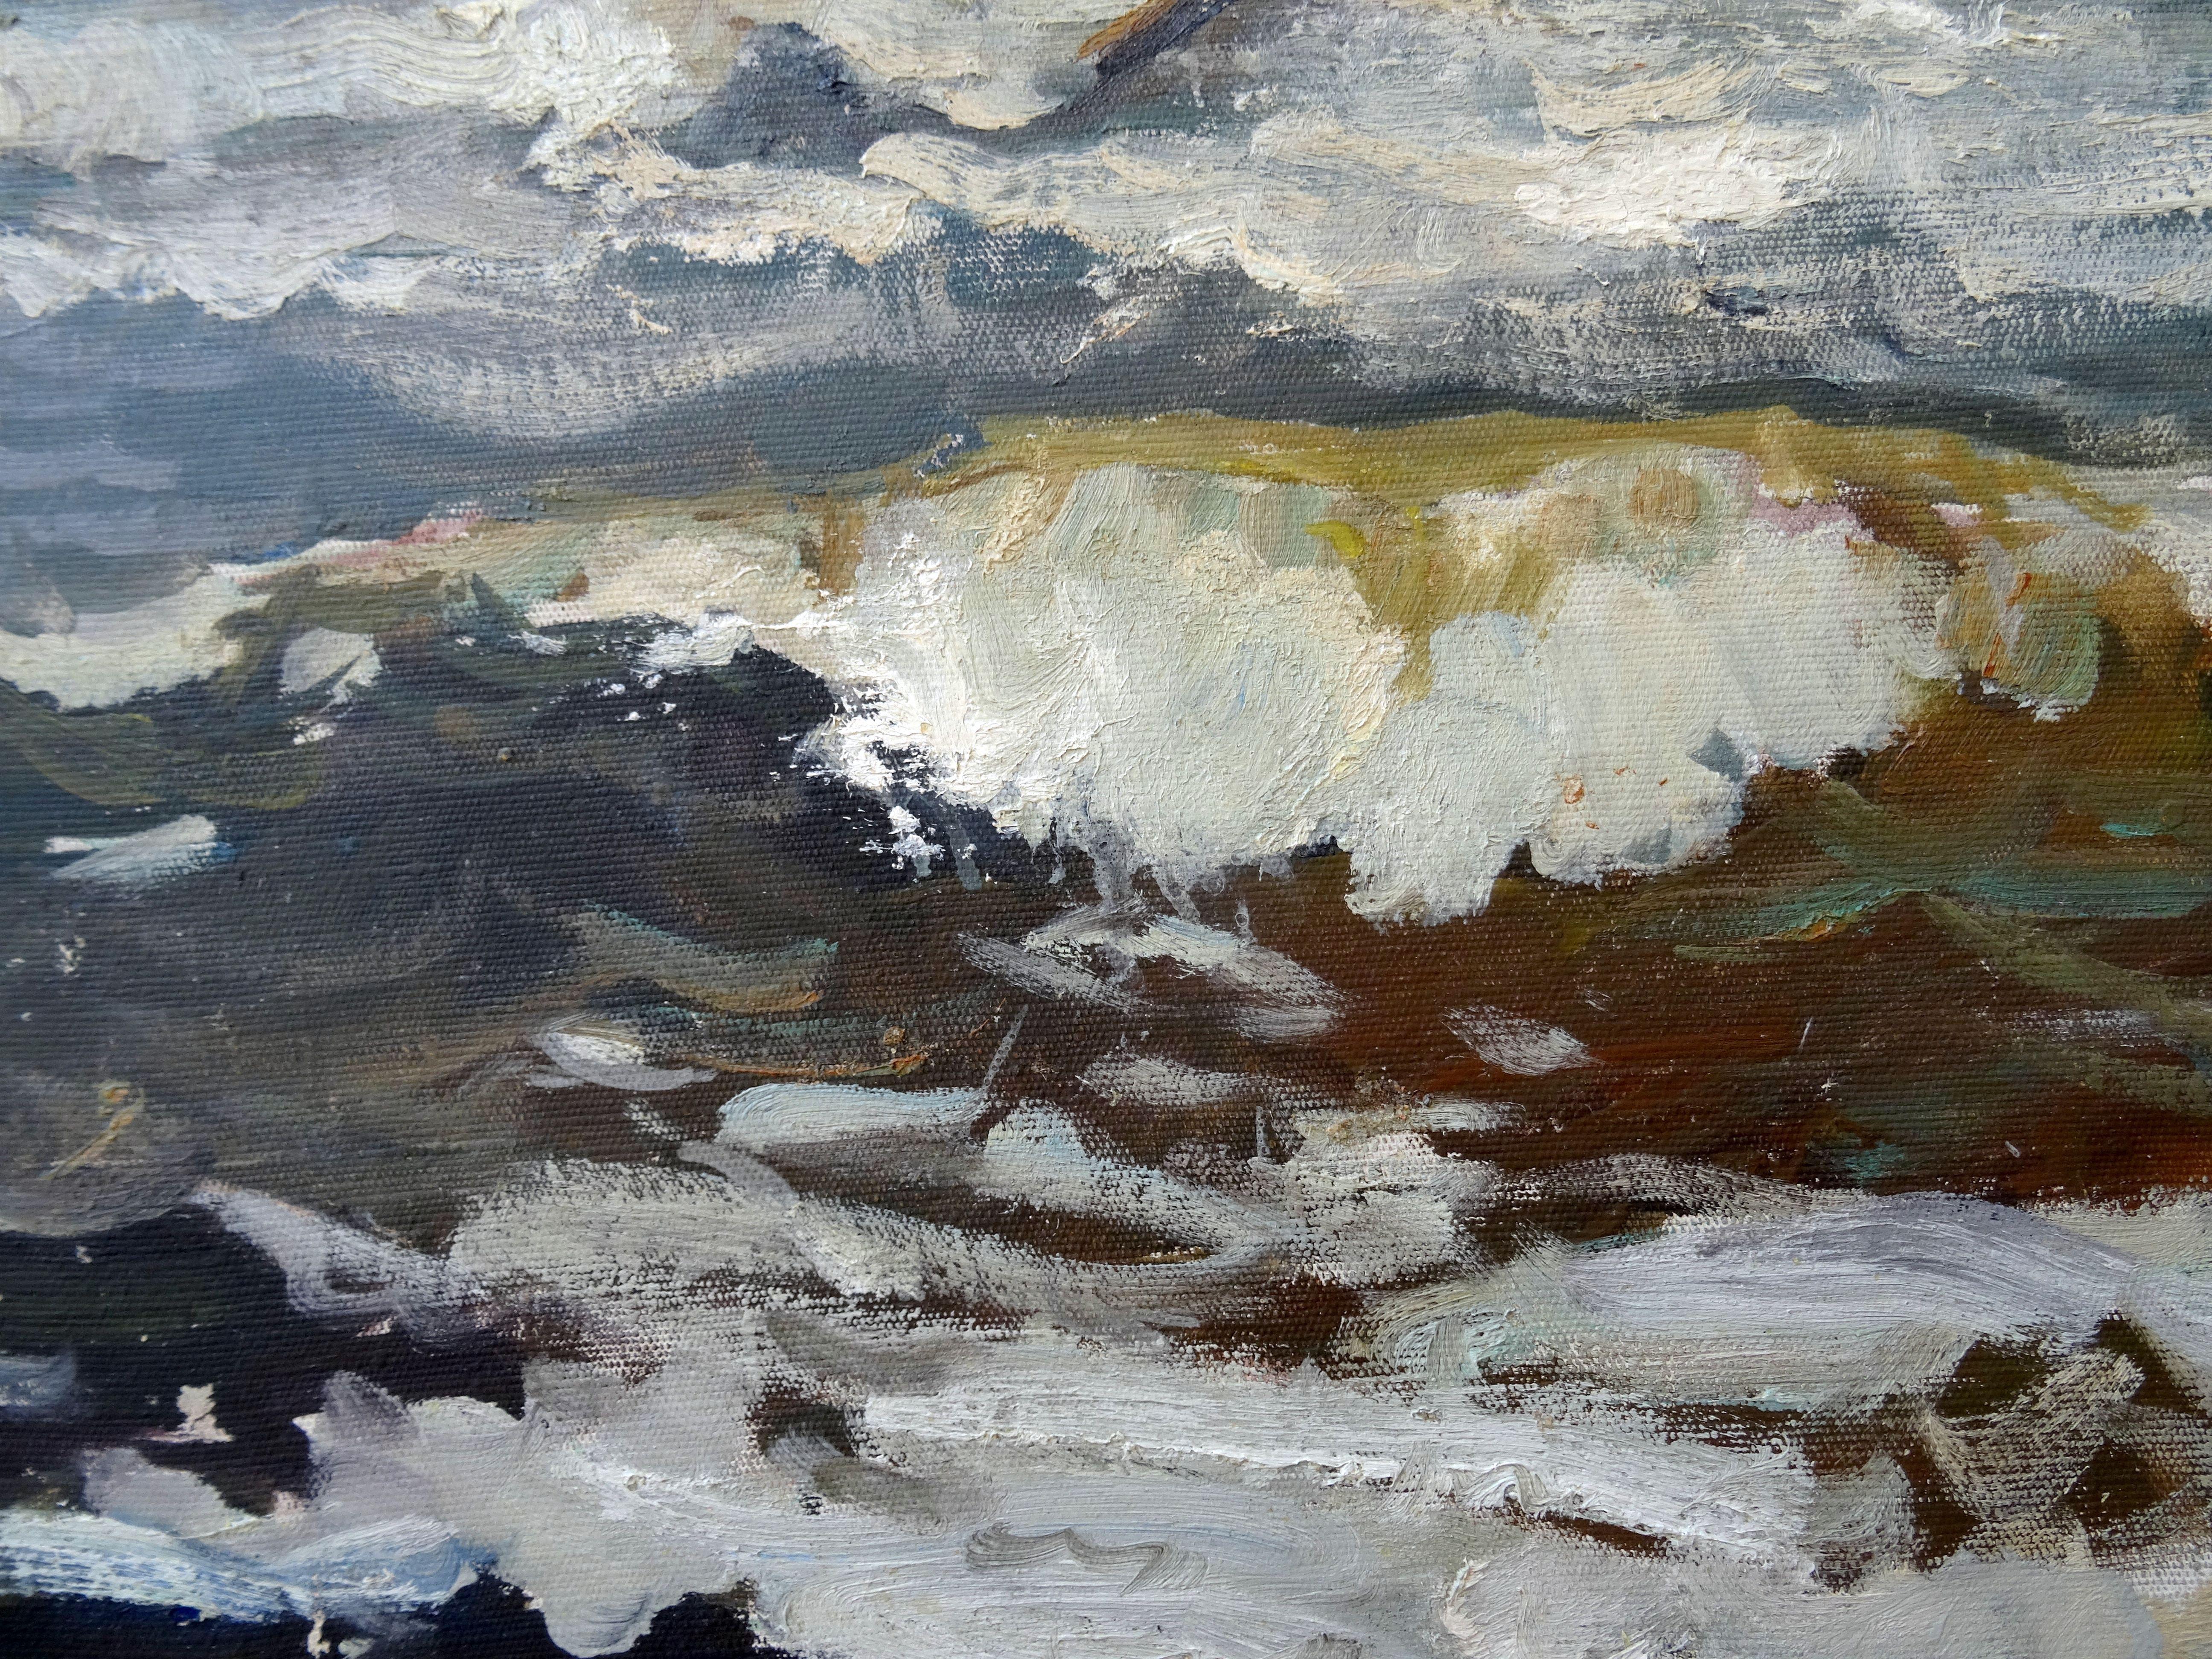 La mer. Peinture à l'huile sur toile 61 x 70 cm - Réalisme Painting par German Dontsov